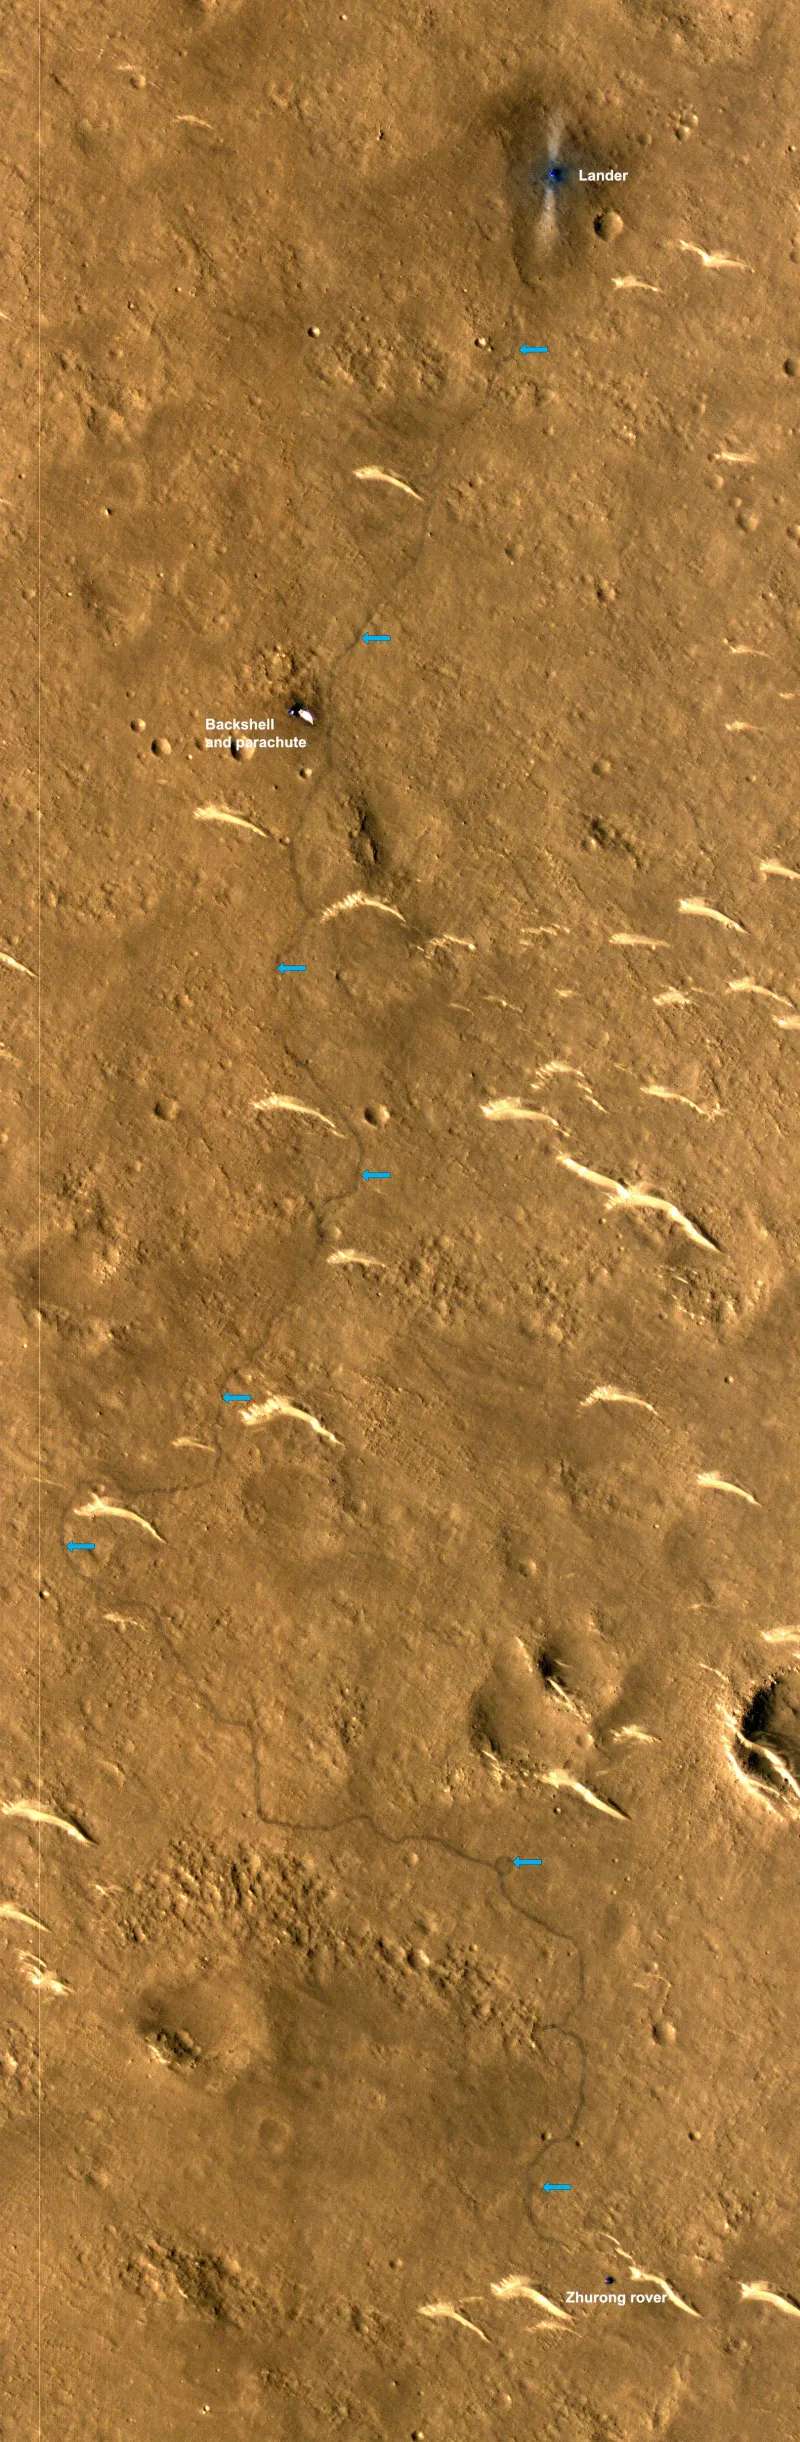 Les traces de roues du rover immortalisées depuis l'orbite martienne par le Mars Reconnaissance Orbiter. © Nasa/JPL/CalTech/UArizona